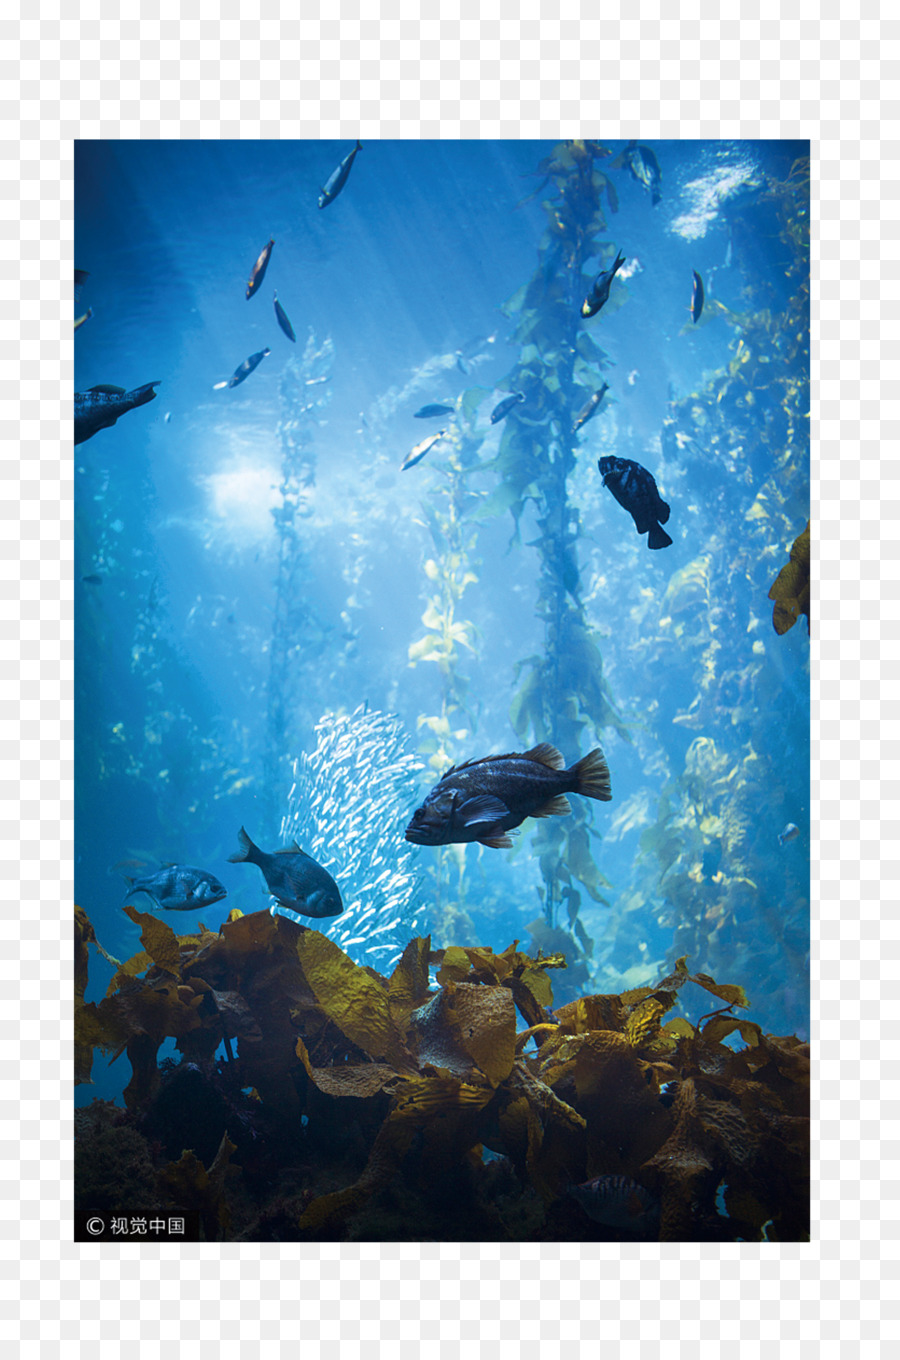 aquarium clipart underwater sea